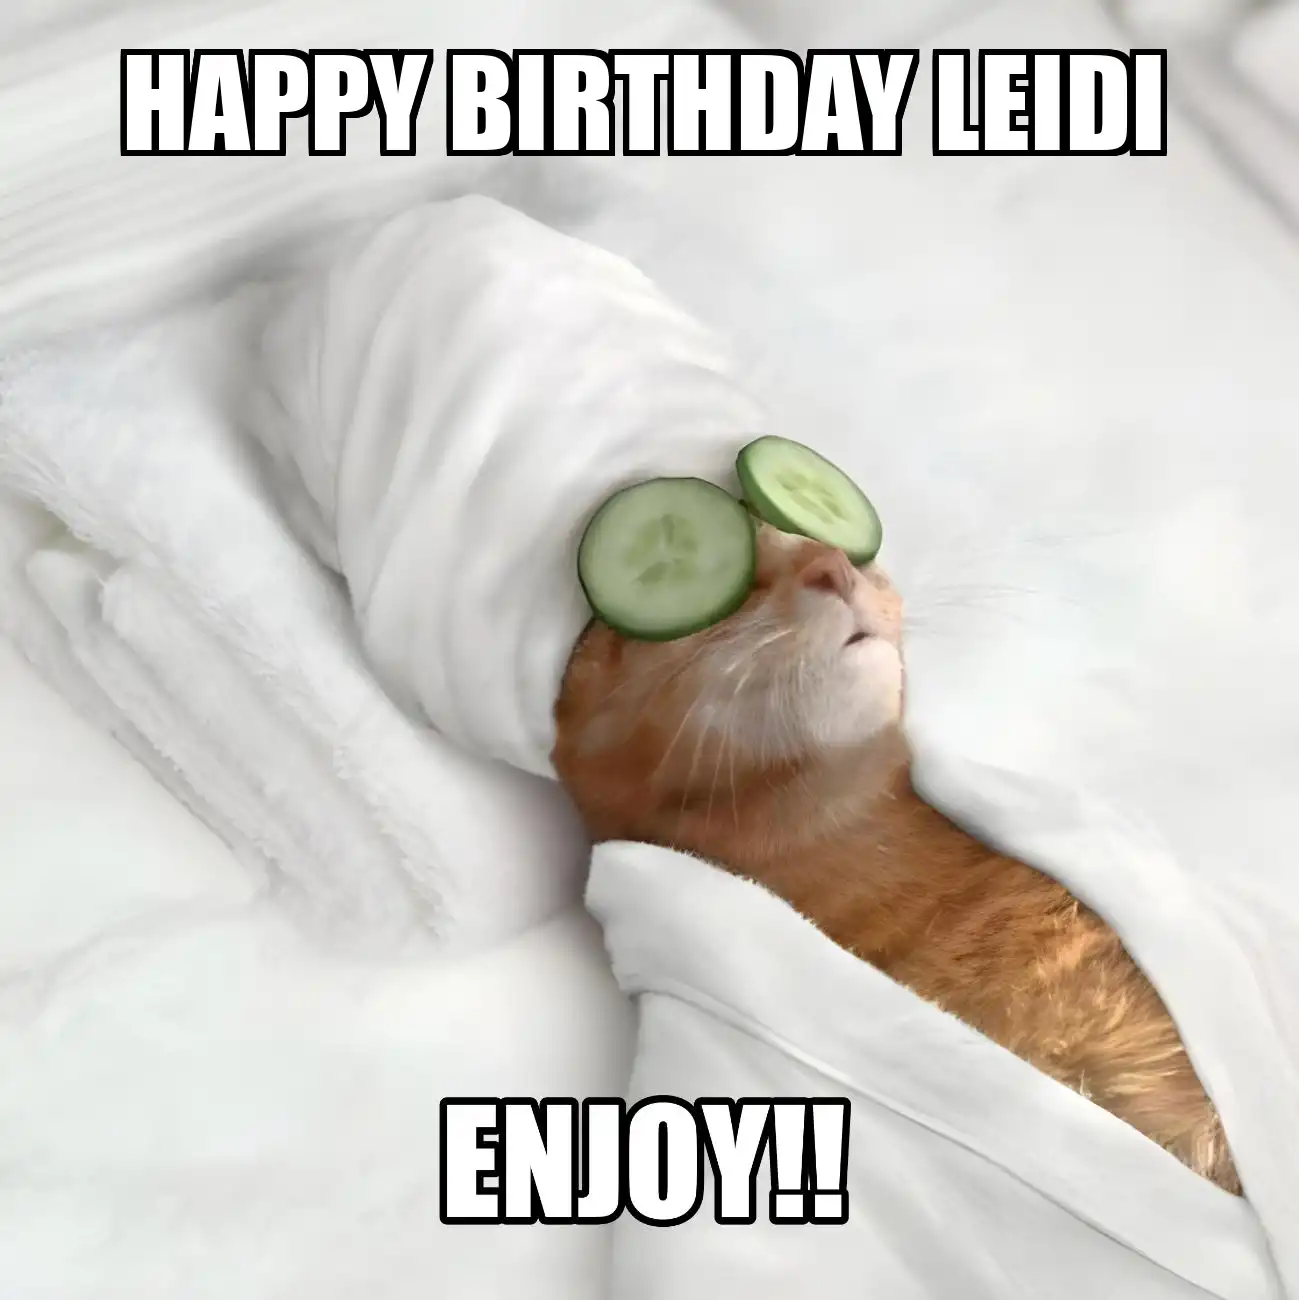 Happy Birthday Leidi Enjoy Cat Meme